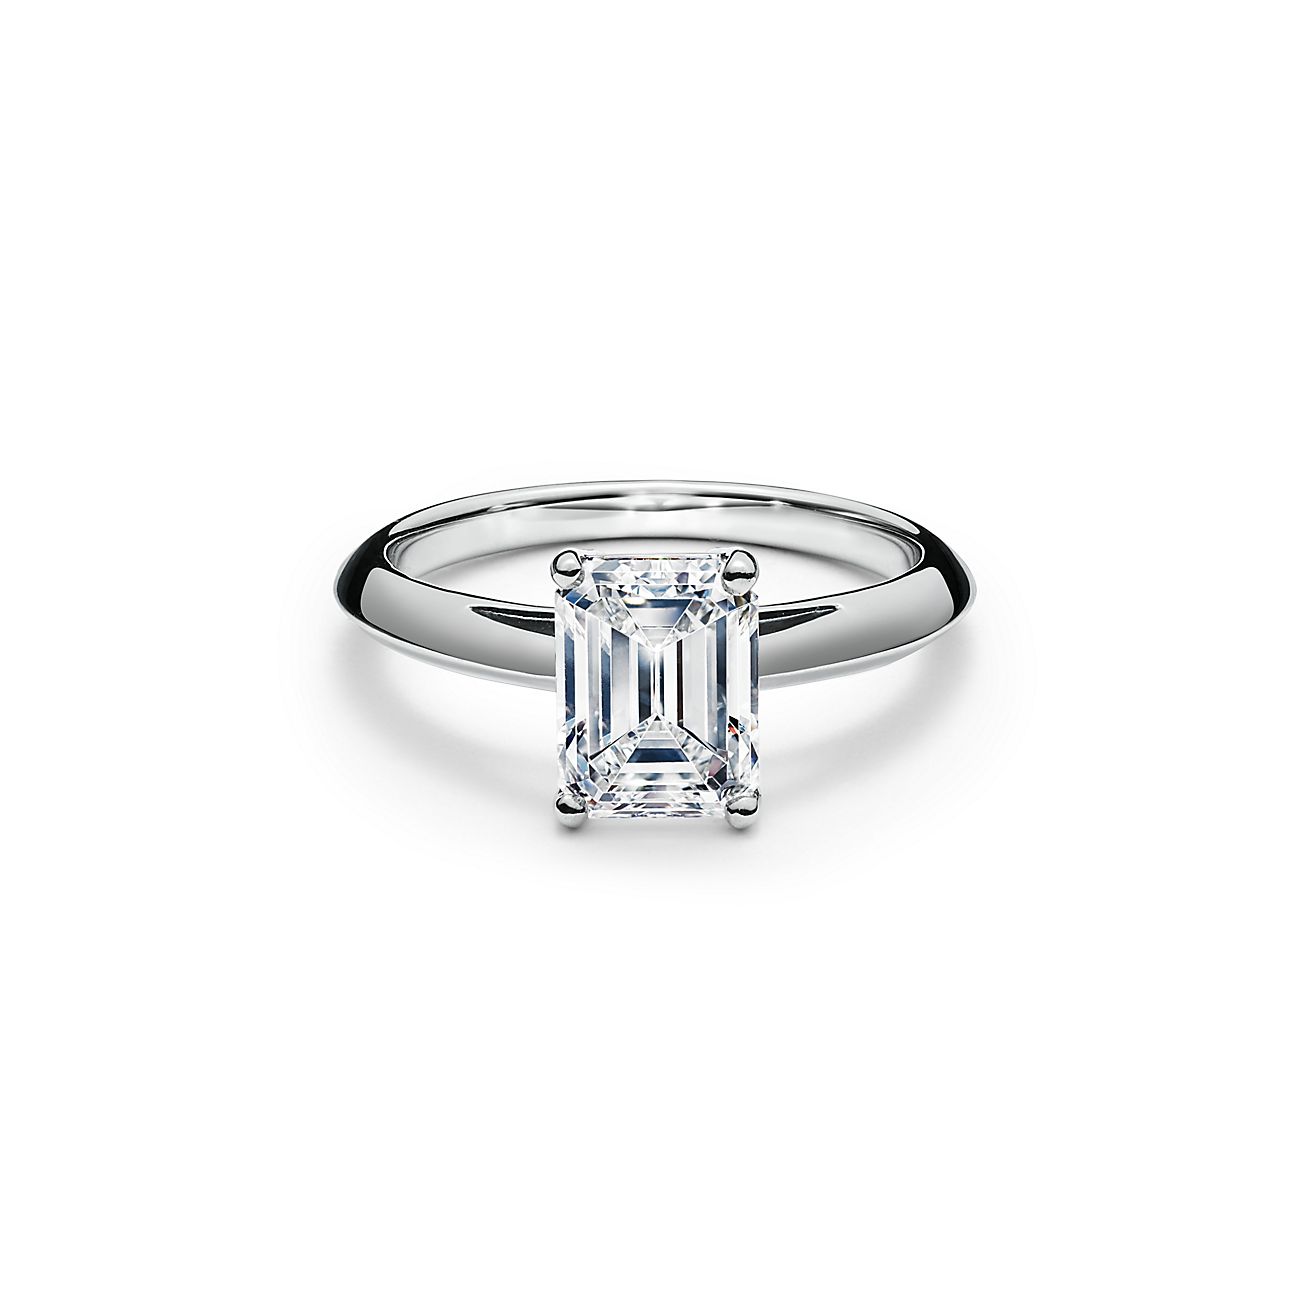 2.1 carat diamond tiffany ring